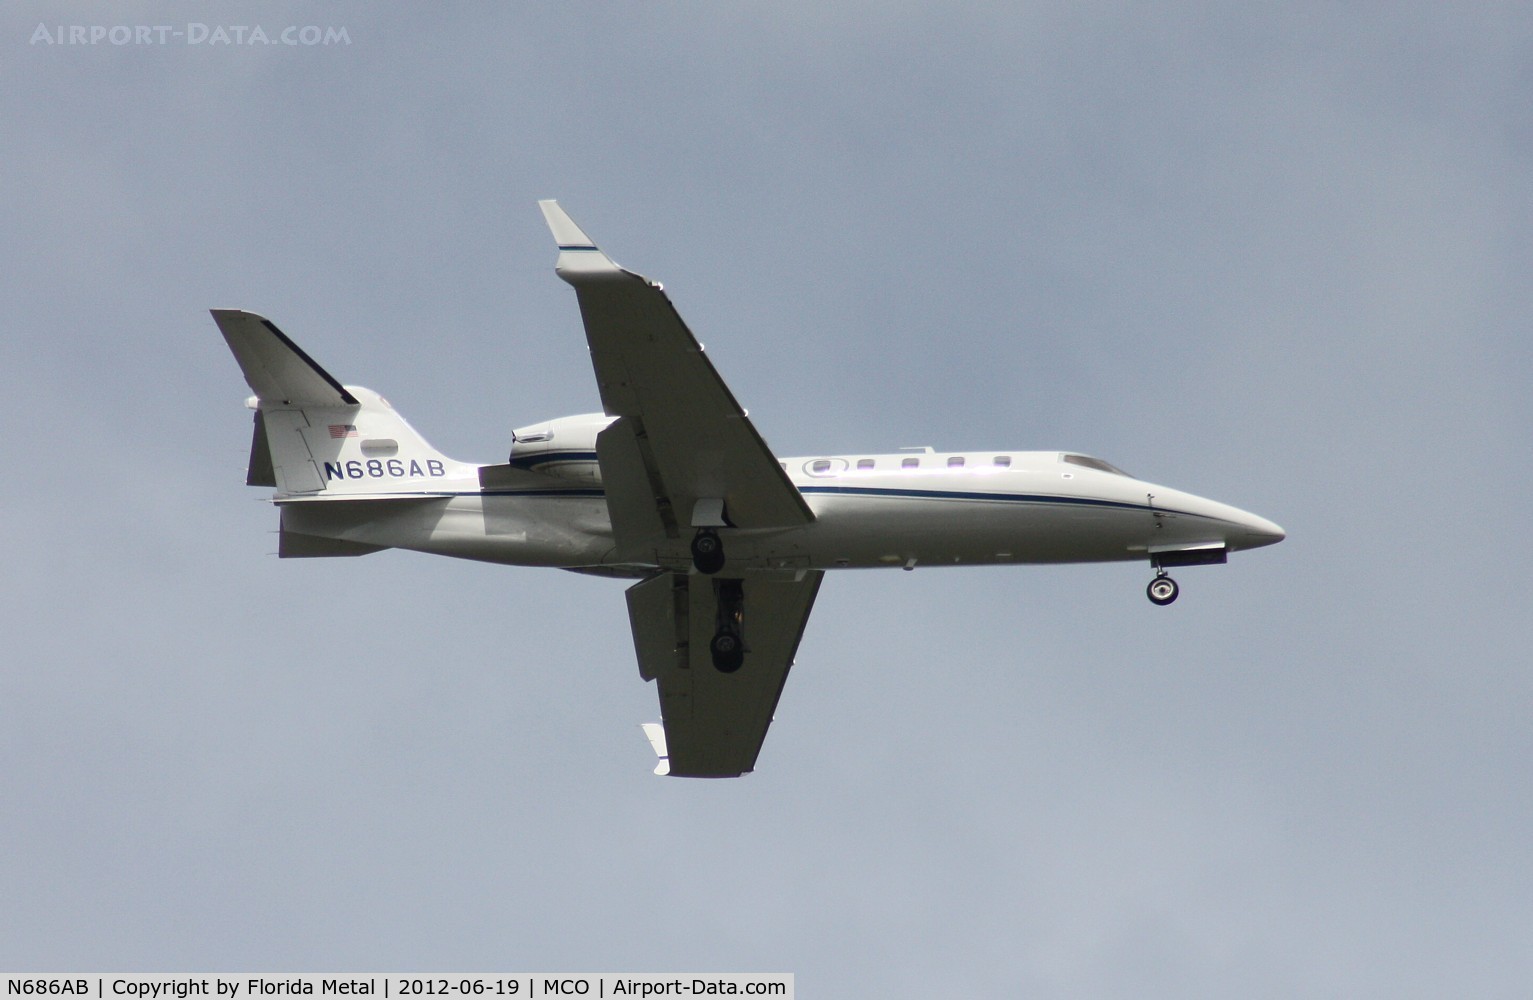 N686AB, 2002 Learjet Inc 31A C/N 239, Lear 31A